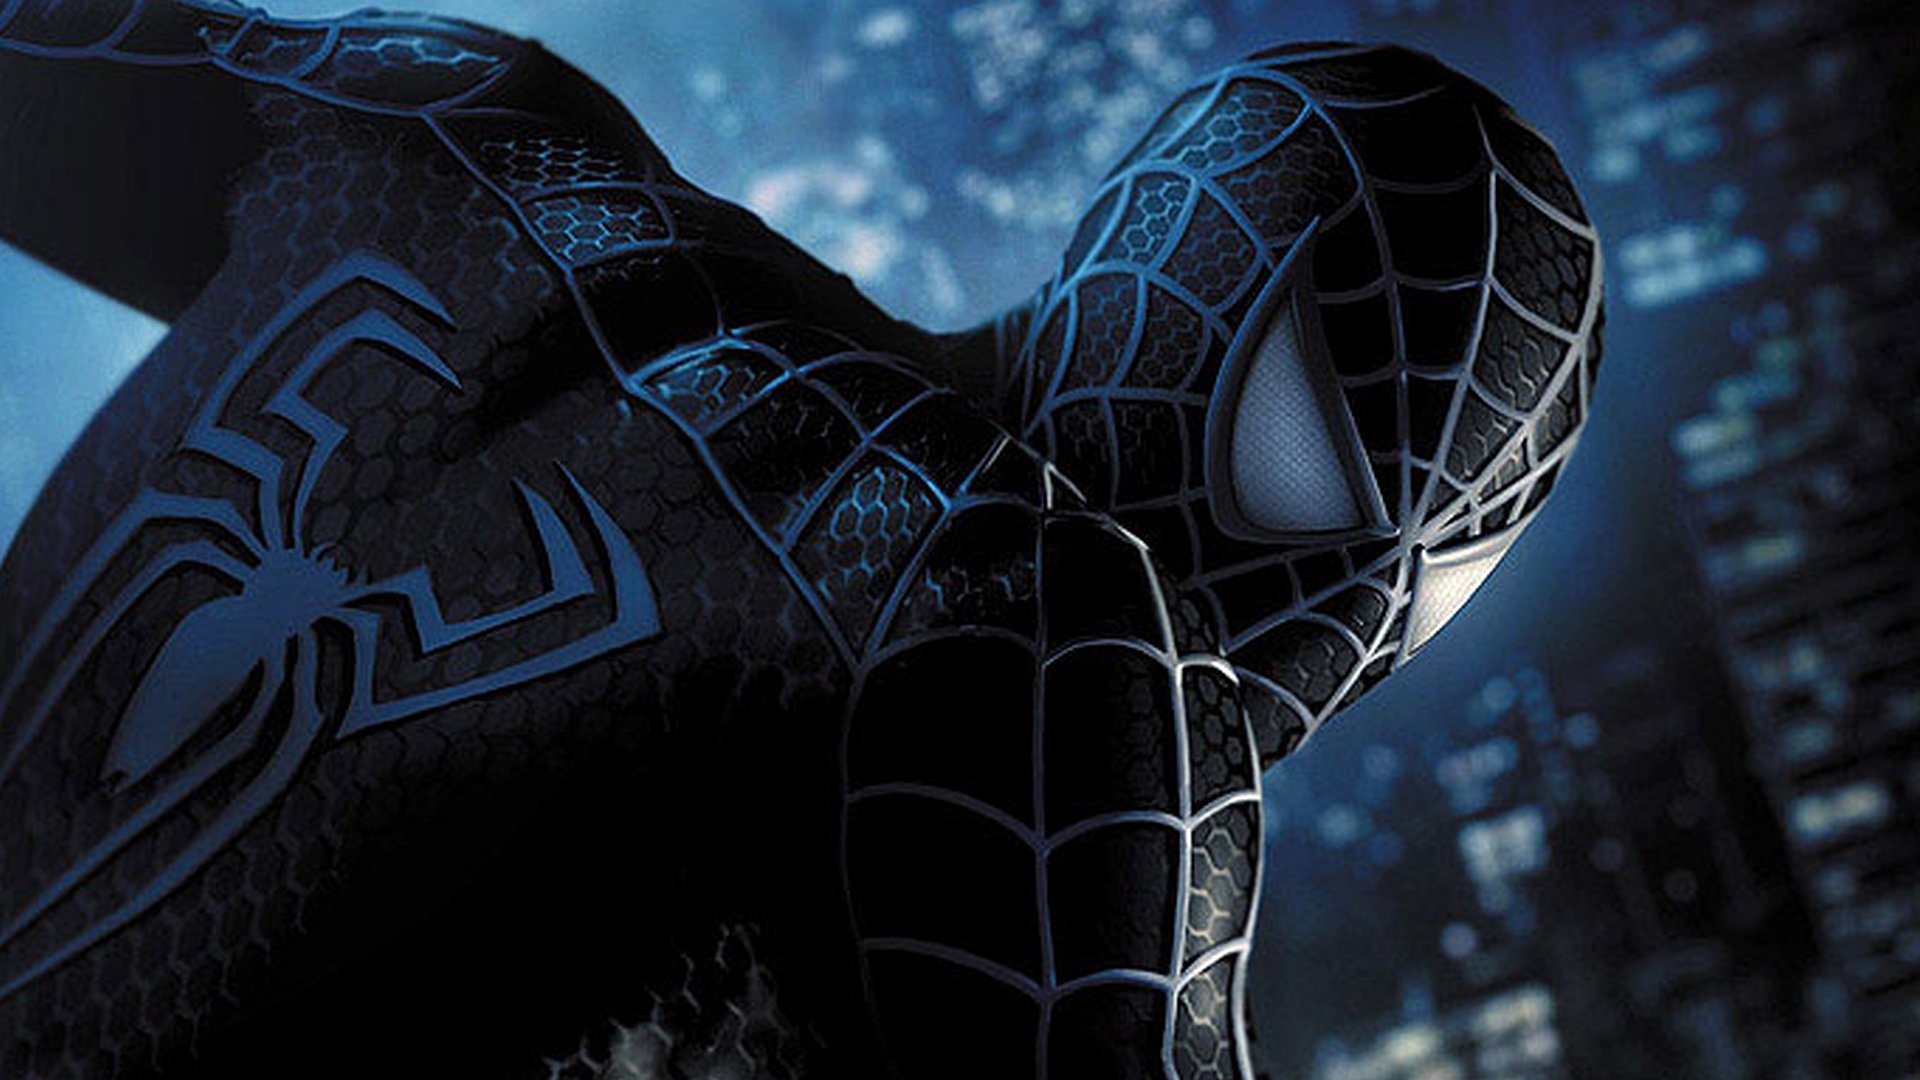 Hình nền Spiderman HD sẽ khiến bạn phải ngưỡng mộ những chi tiết tinh tế của siêu anh hùng này, từ chiếc áo đỏ đầy mạnh mẽ cho đến những bộ cánh đặc biệt khiến Spiderman trở nên vô cùng lôi cuốn. Hãy tải ngay và trang trí cho màn hình điện thoại của bạn.